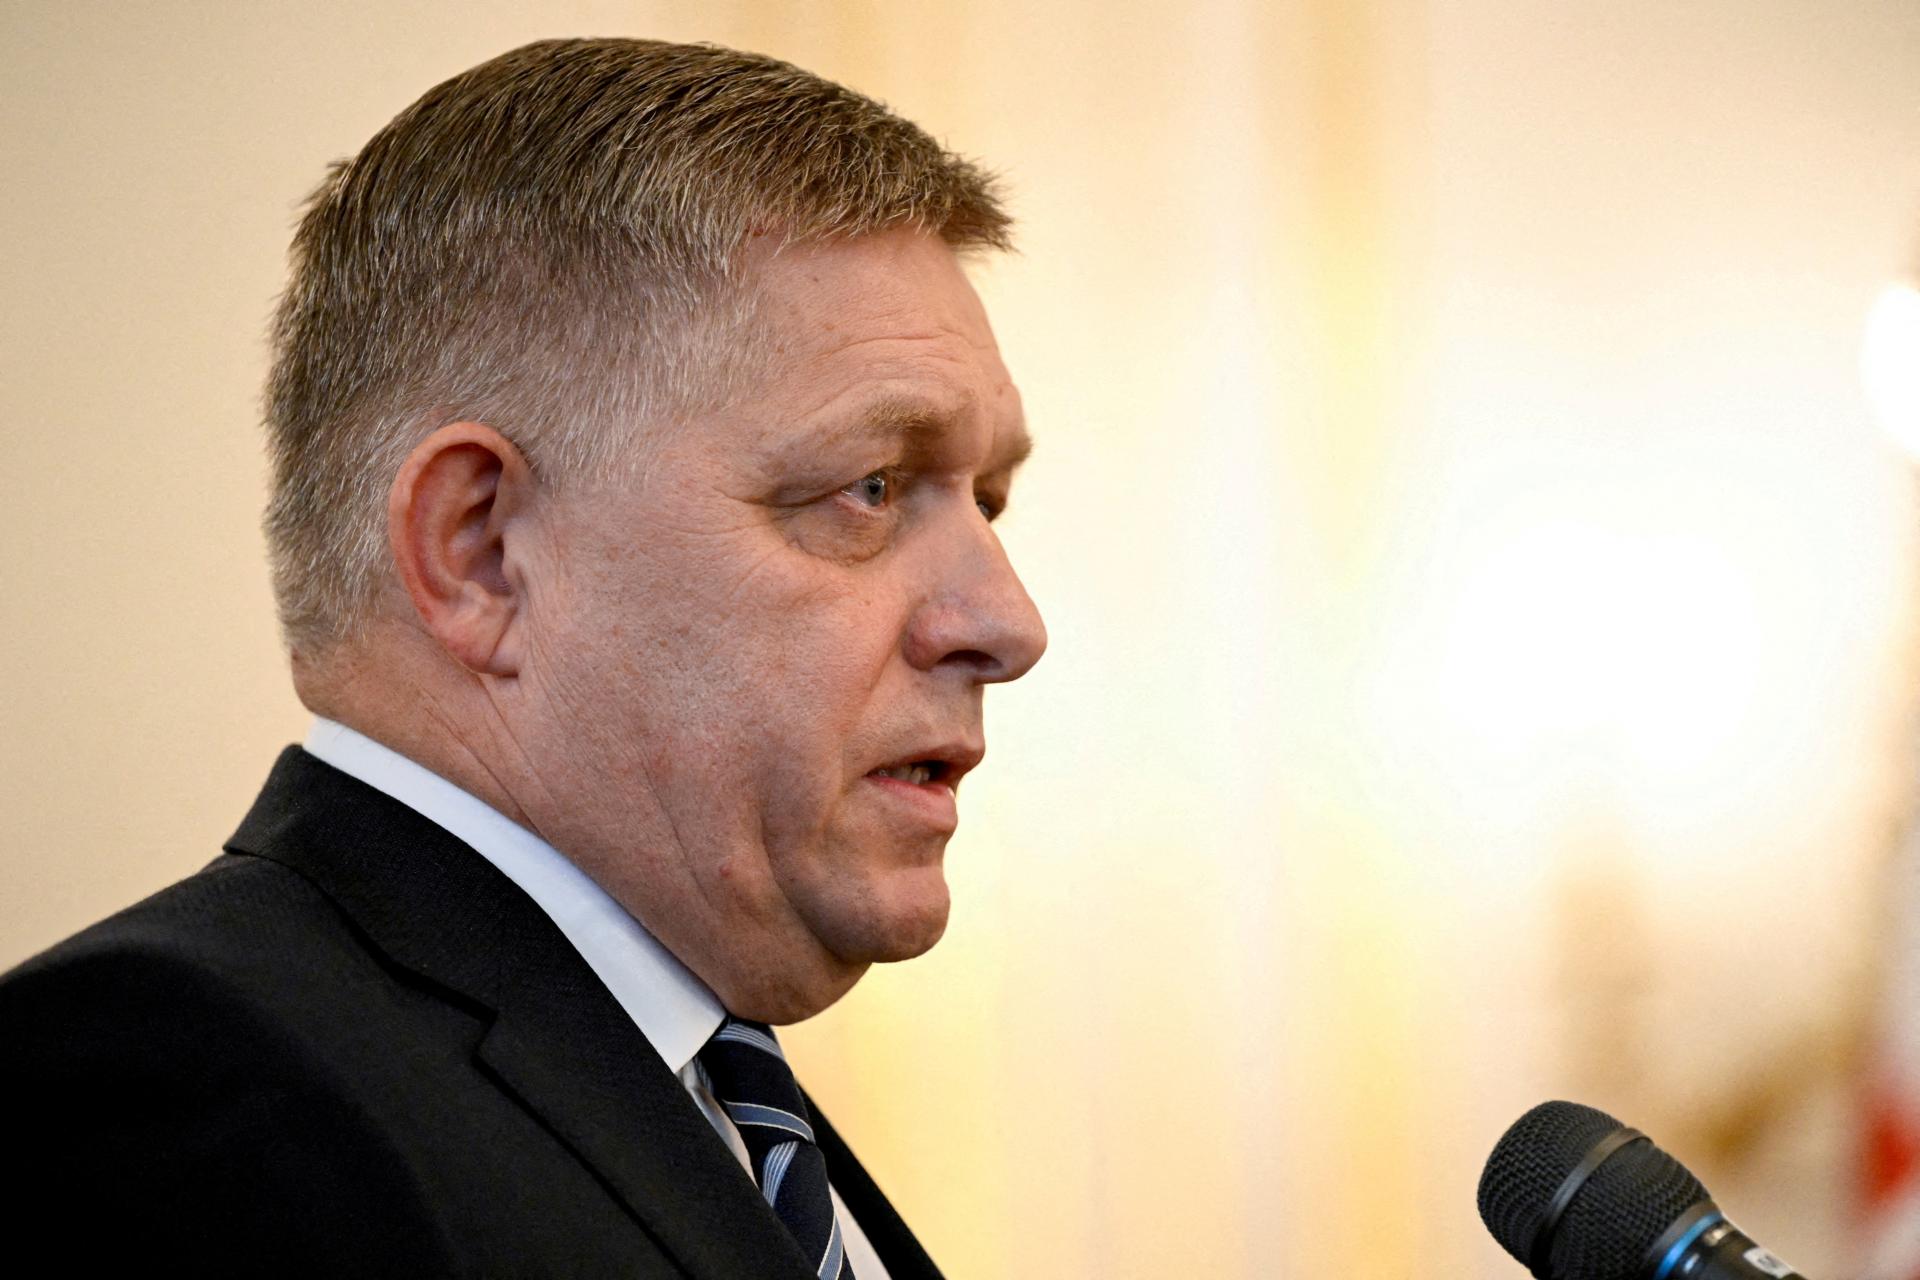 Európska komisia zasiahne proti Slovensku, ak Ficove kroky porušia právo EÚ, povedal komisár